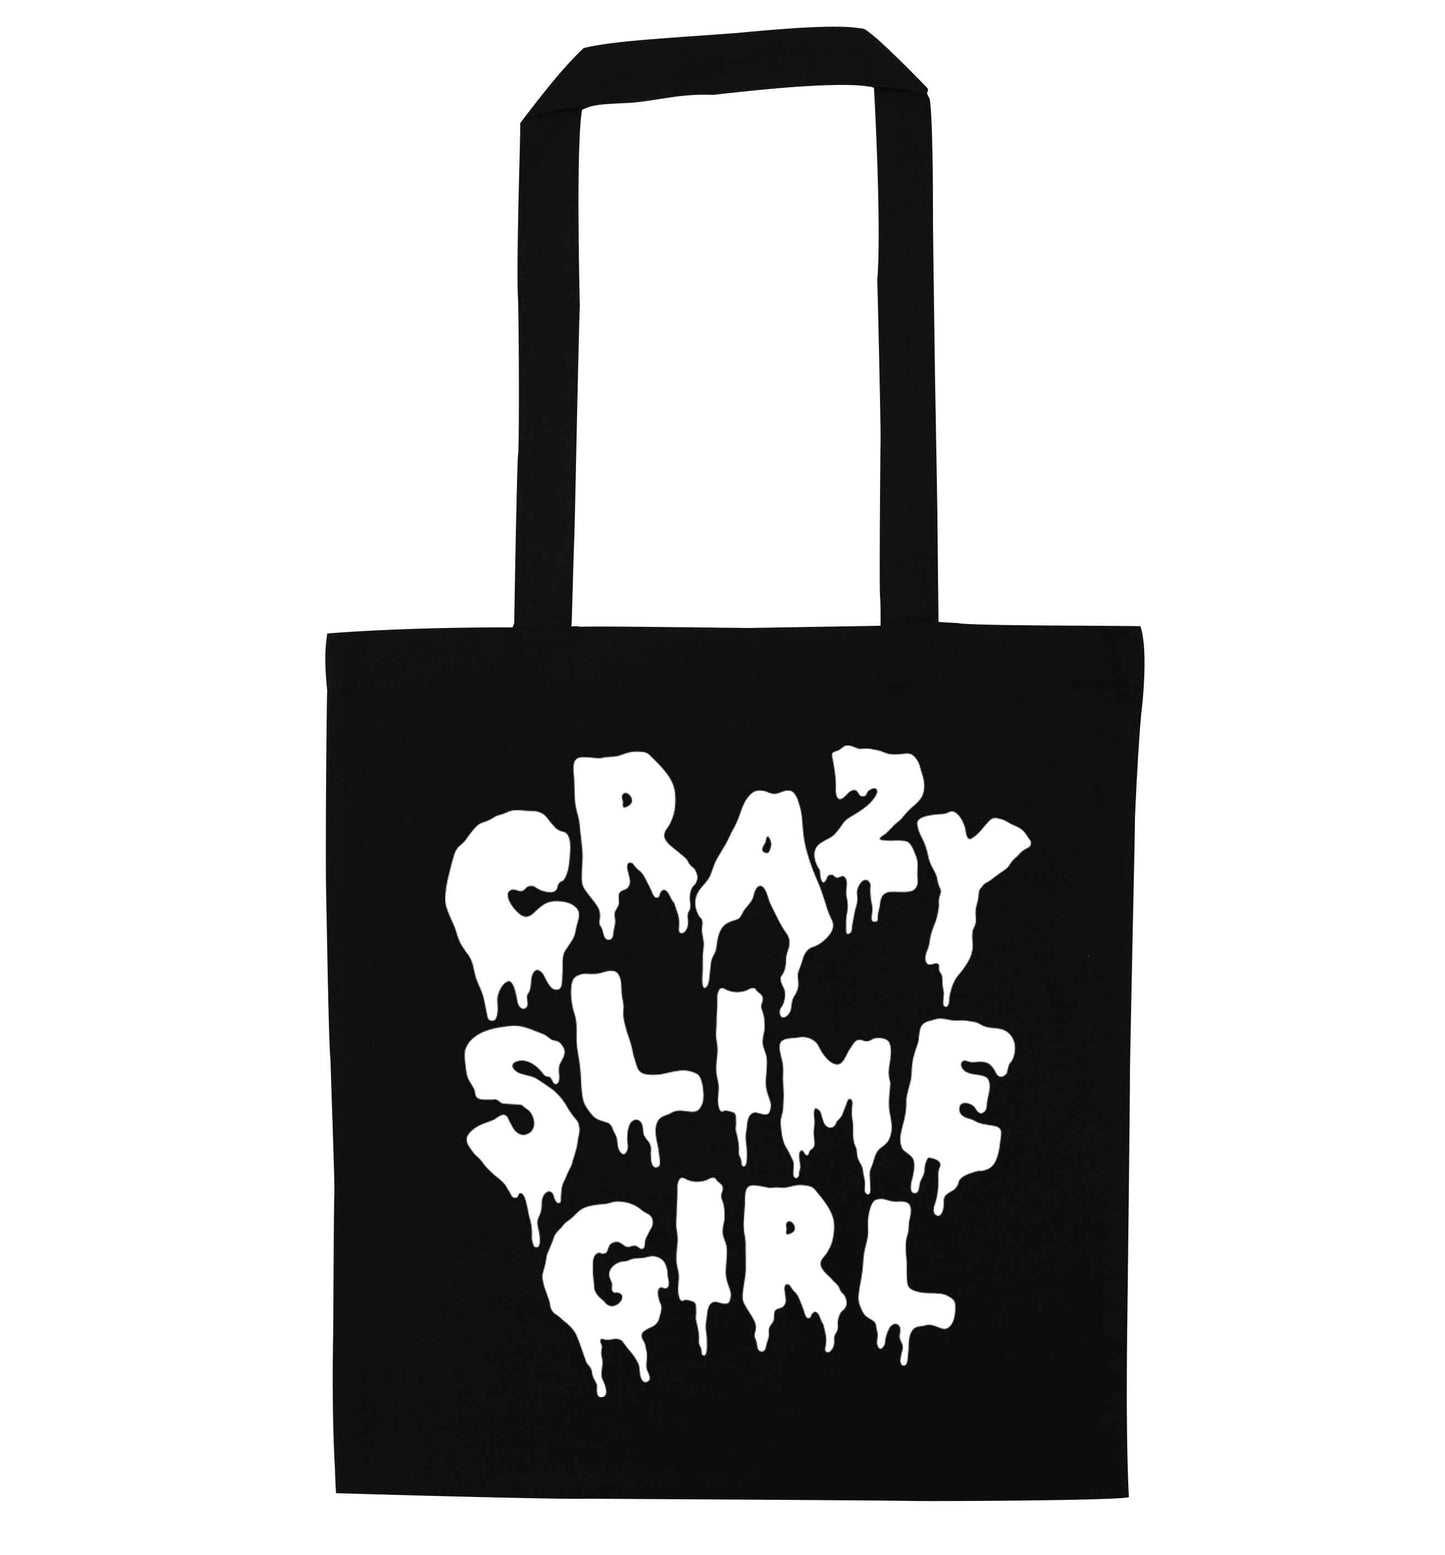 Crazy slime girl black tote bag